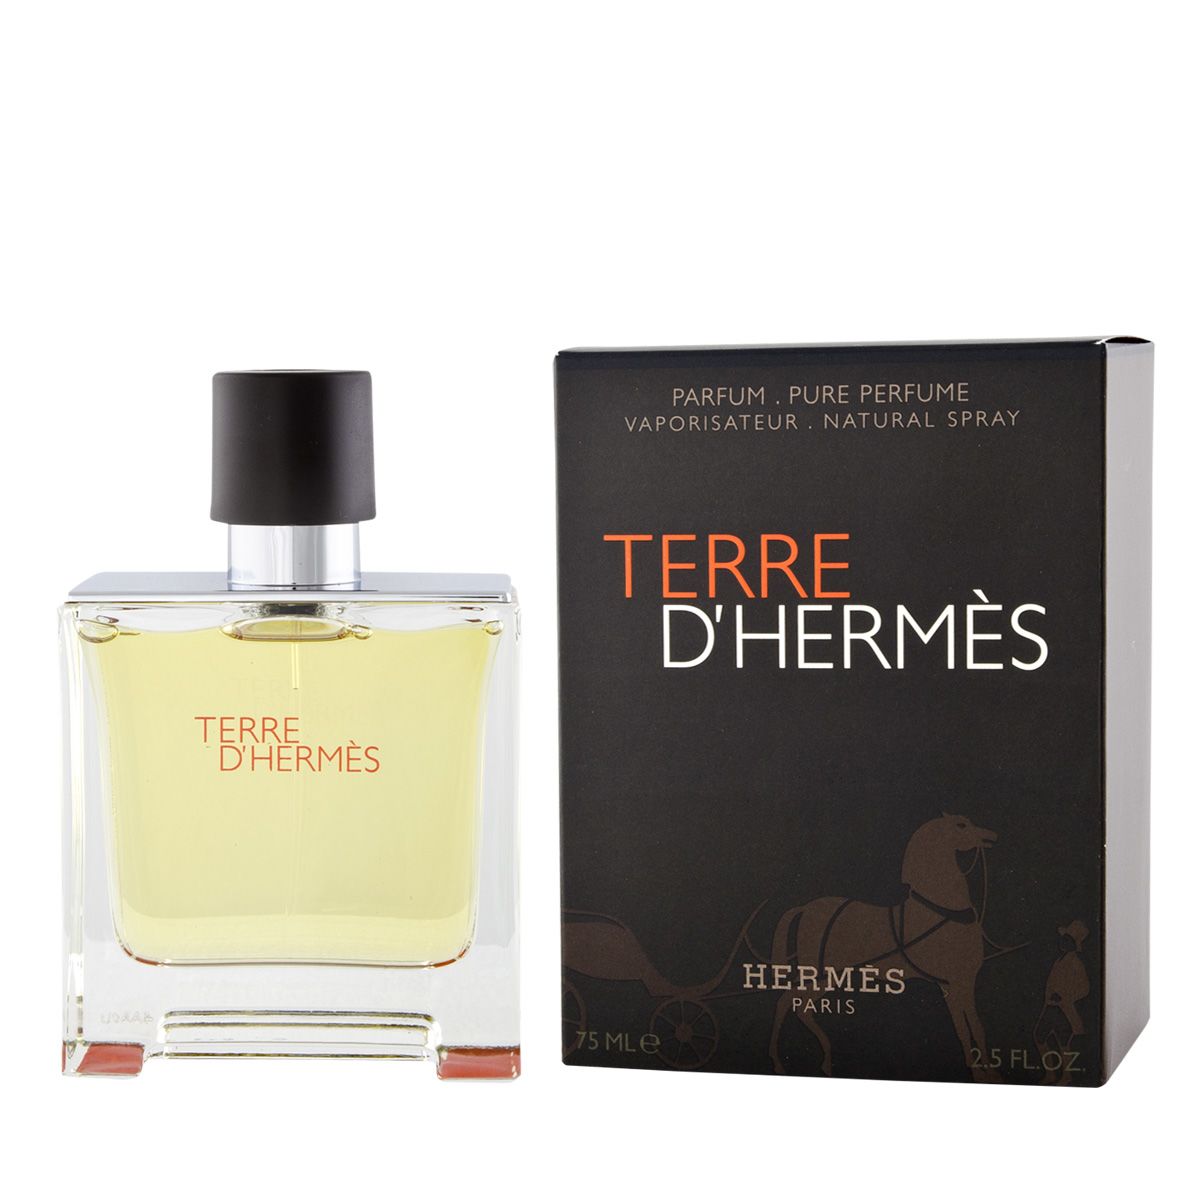 Туалетная вода d hermes. Hermes Terre d'Hermes [m] Parfum - 75ml. Terre d'Hermes Parfum by Hermes. Hermes Terre d'Hermes EDP 75ml. Terre d'Hermes Parfum Pure Perfume.